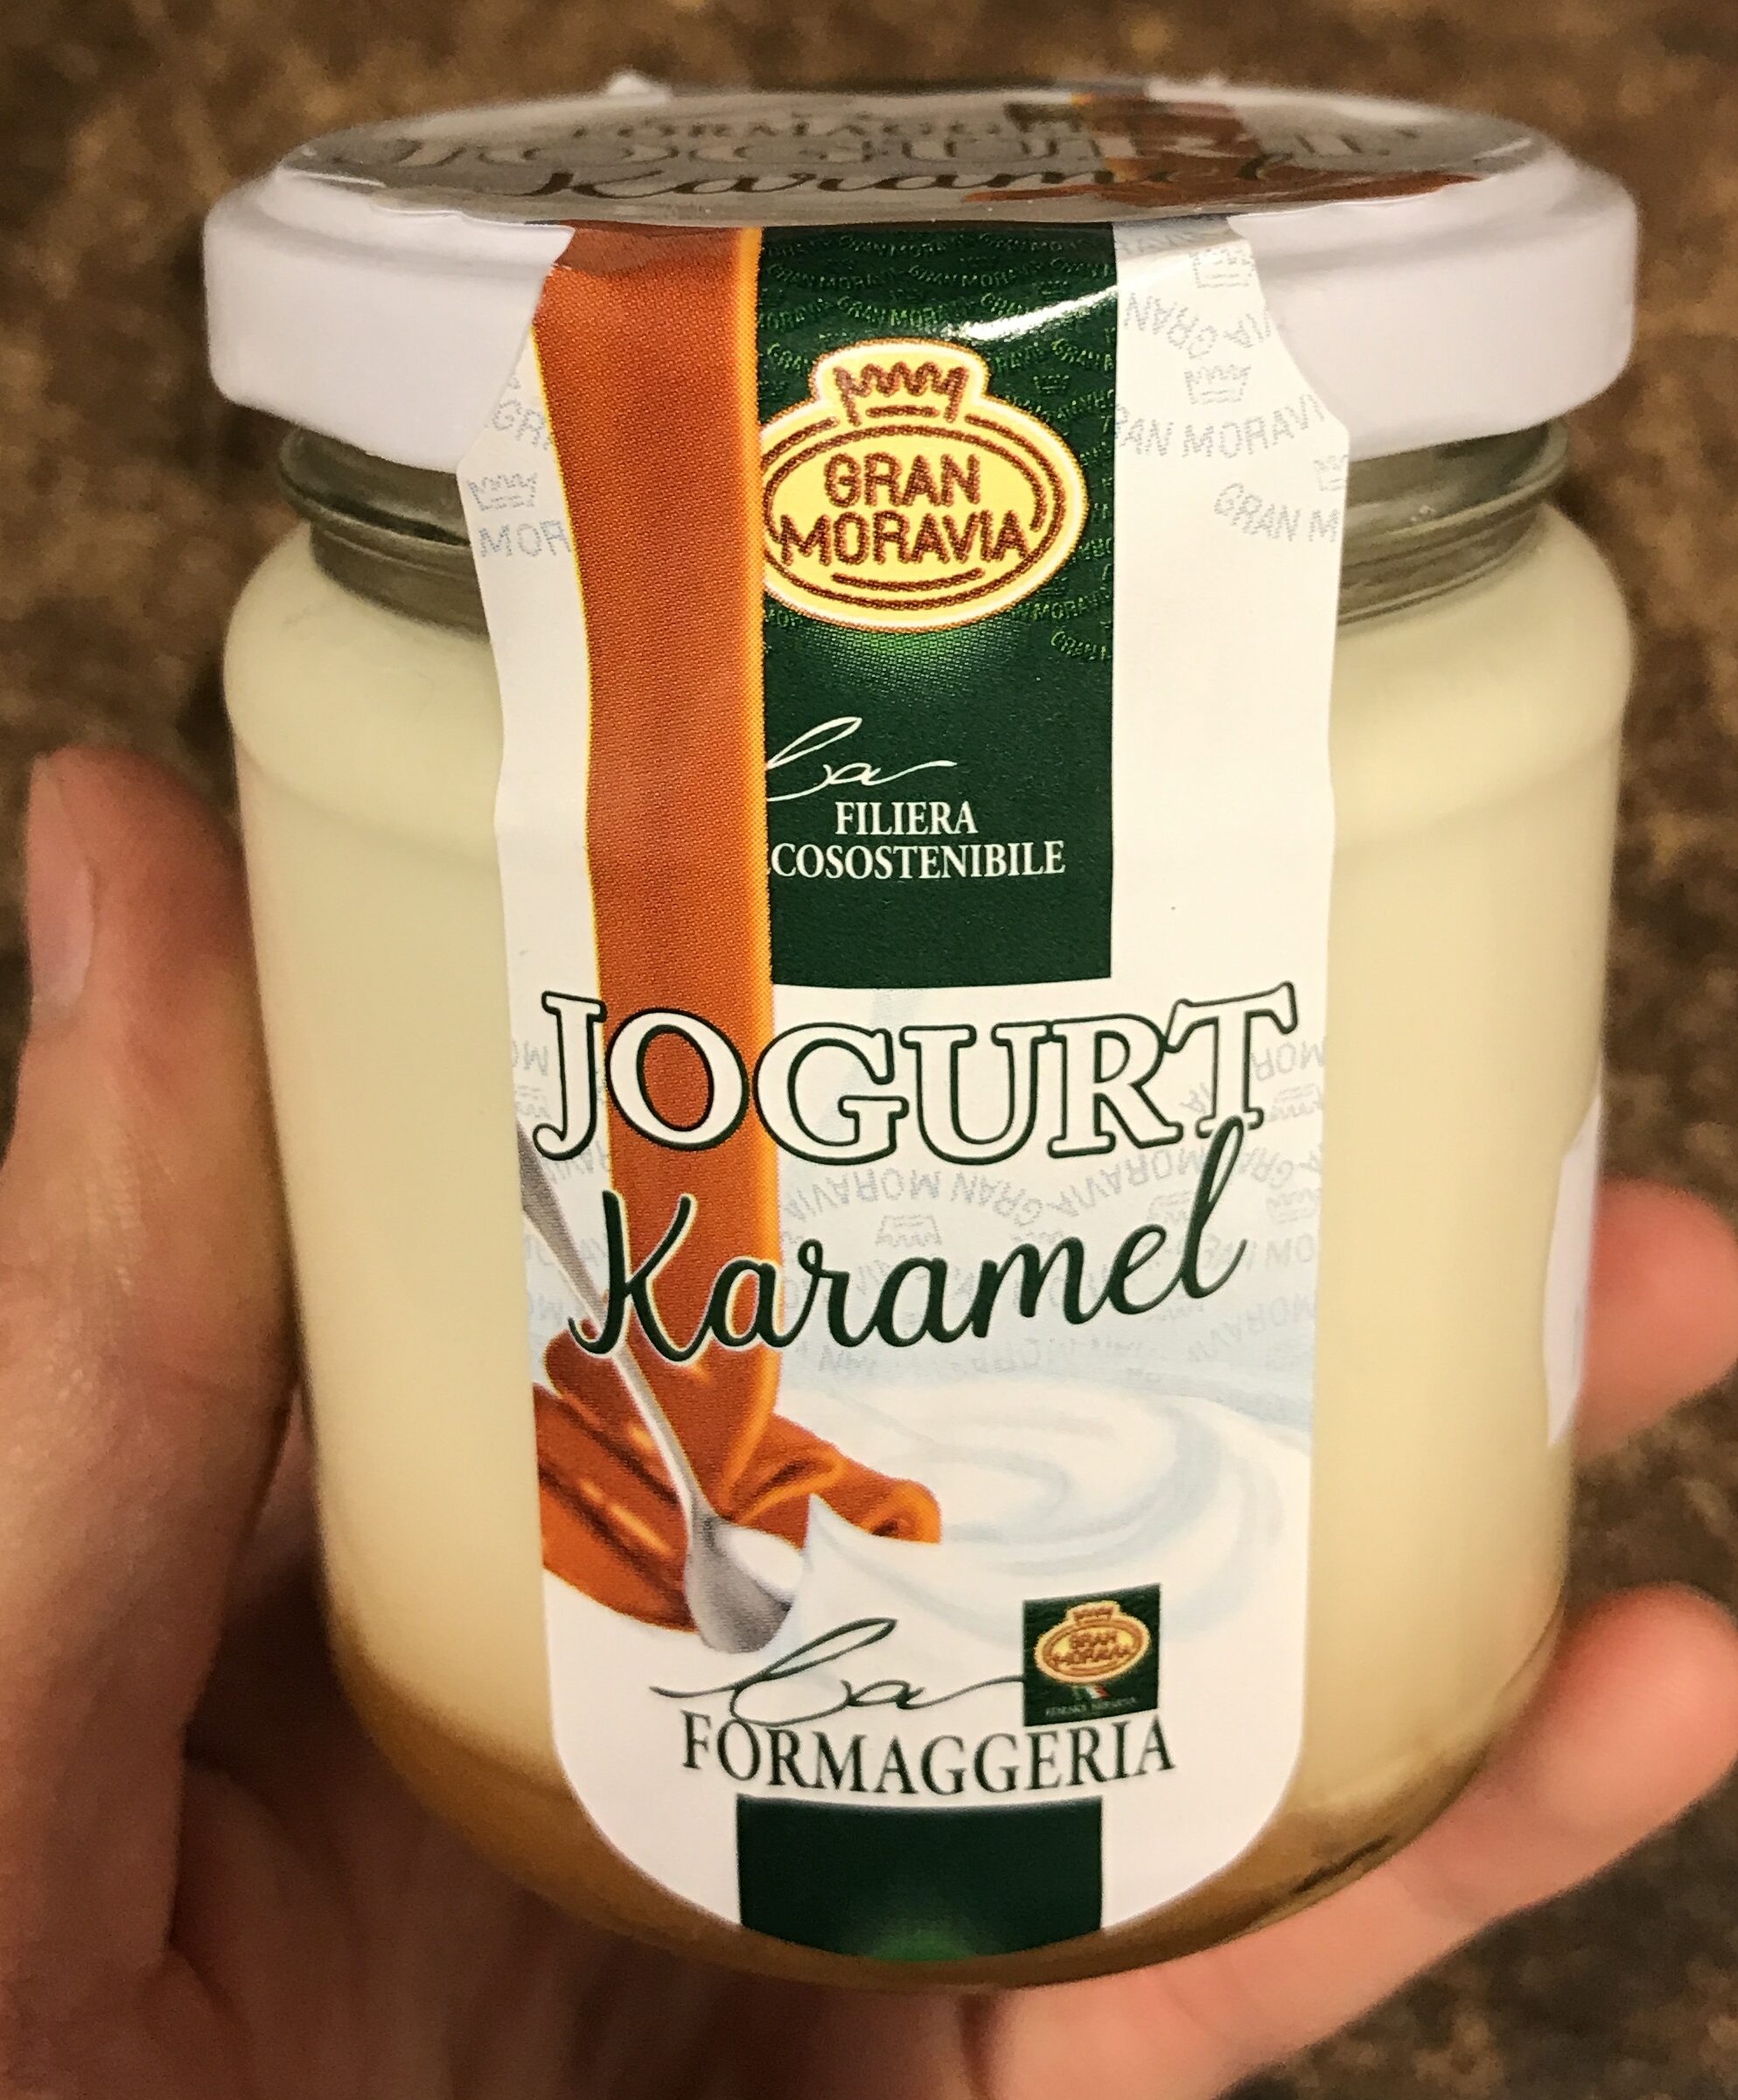 Jogurt karamel - Product - cs